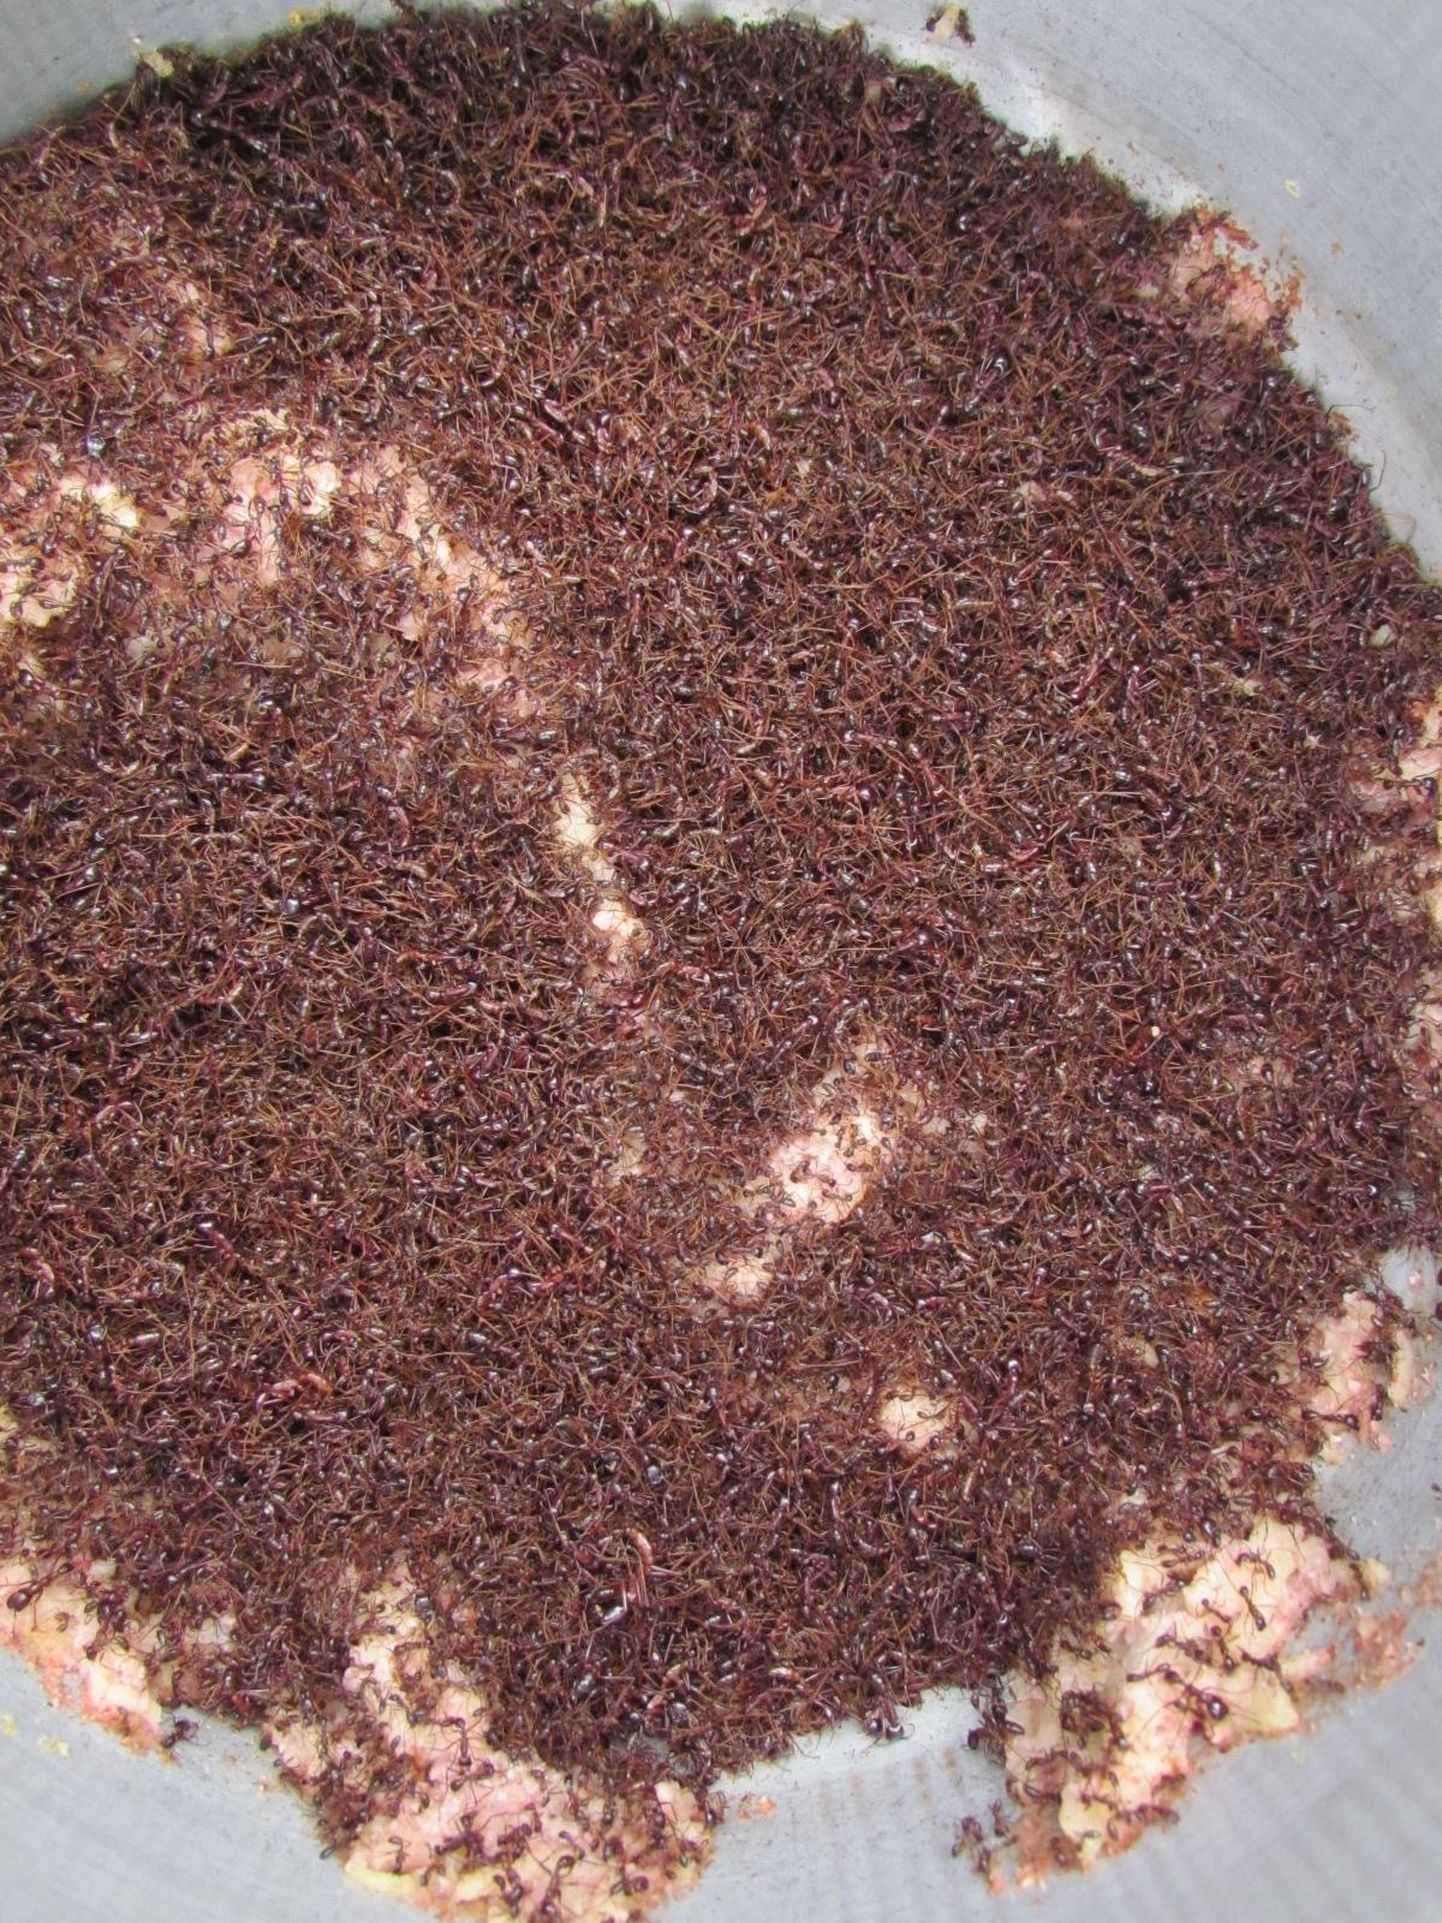 Dorylus’e perekonna sipelgate mass teadlase toidu kallal. Hammustamisel nad saagist lahti ei lase ja rahvameditsiinis kasutatakse neid haavasulguritena.